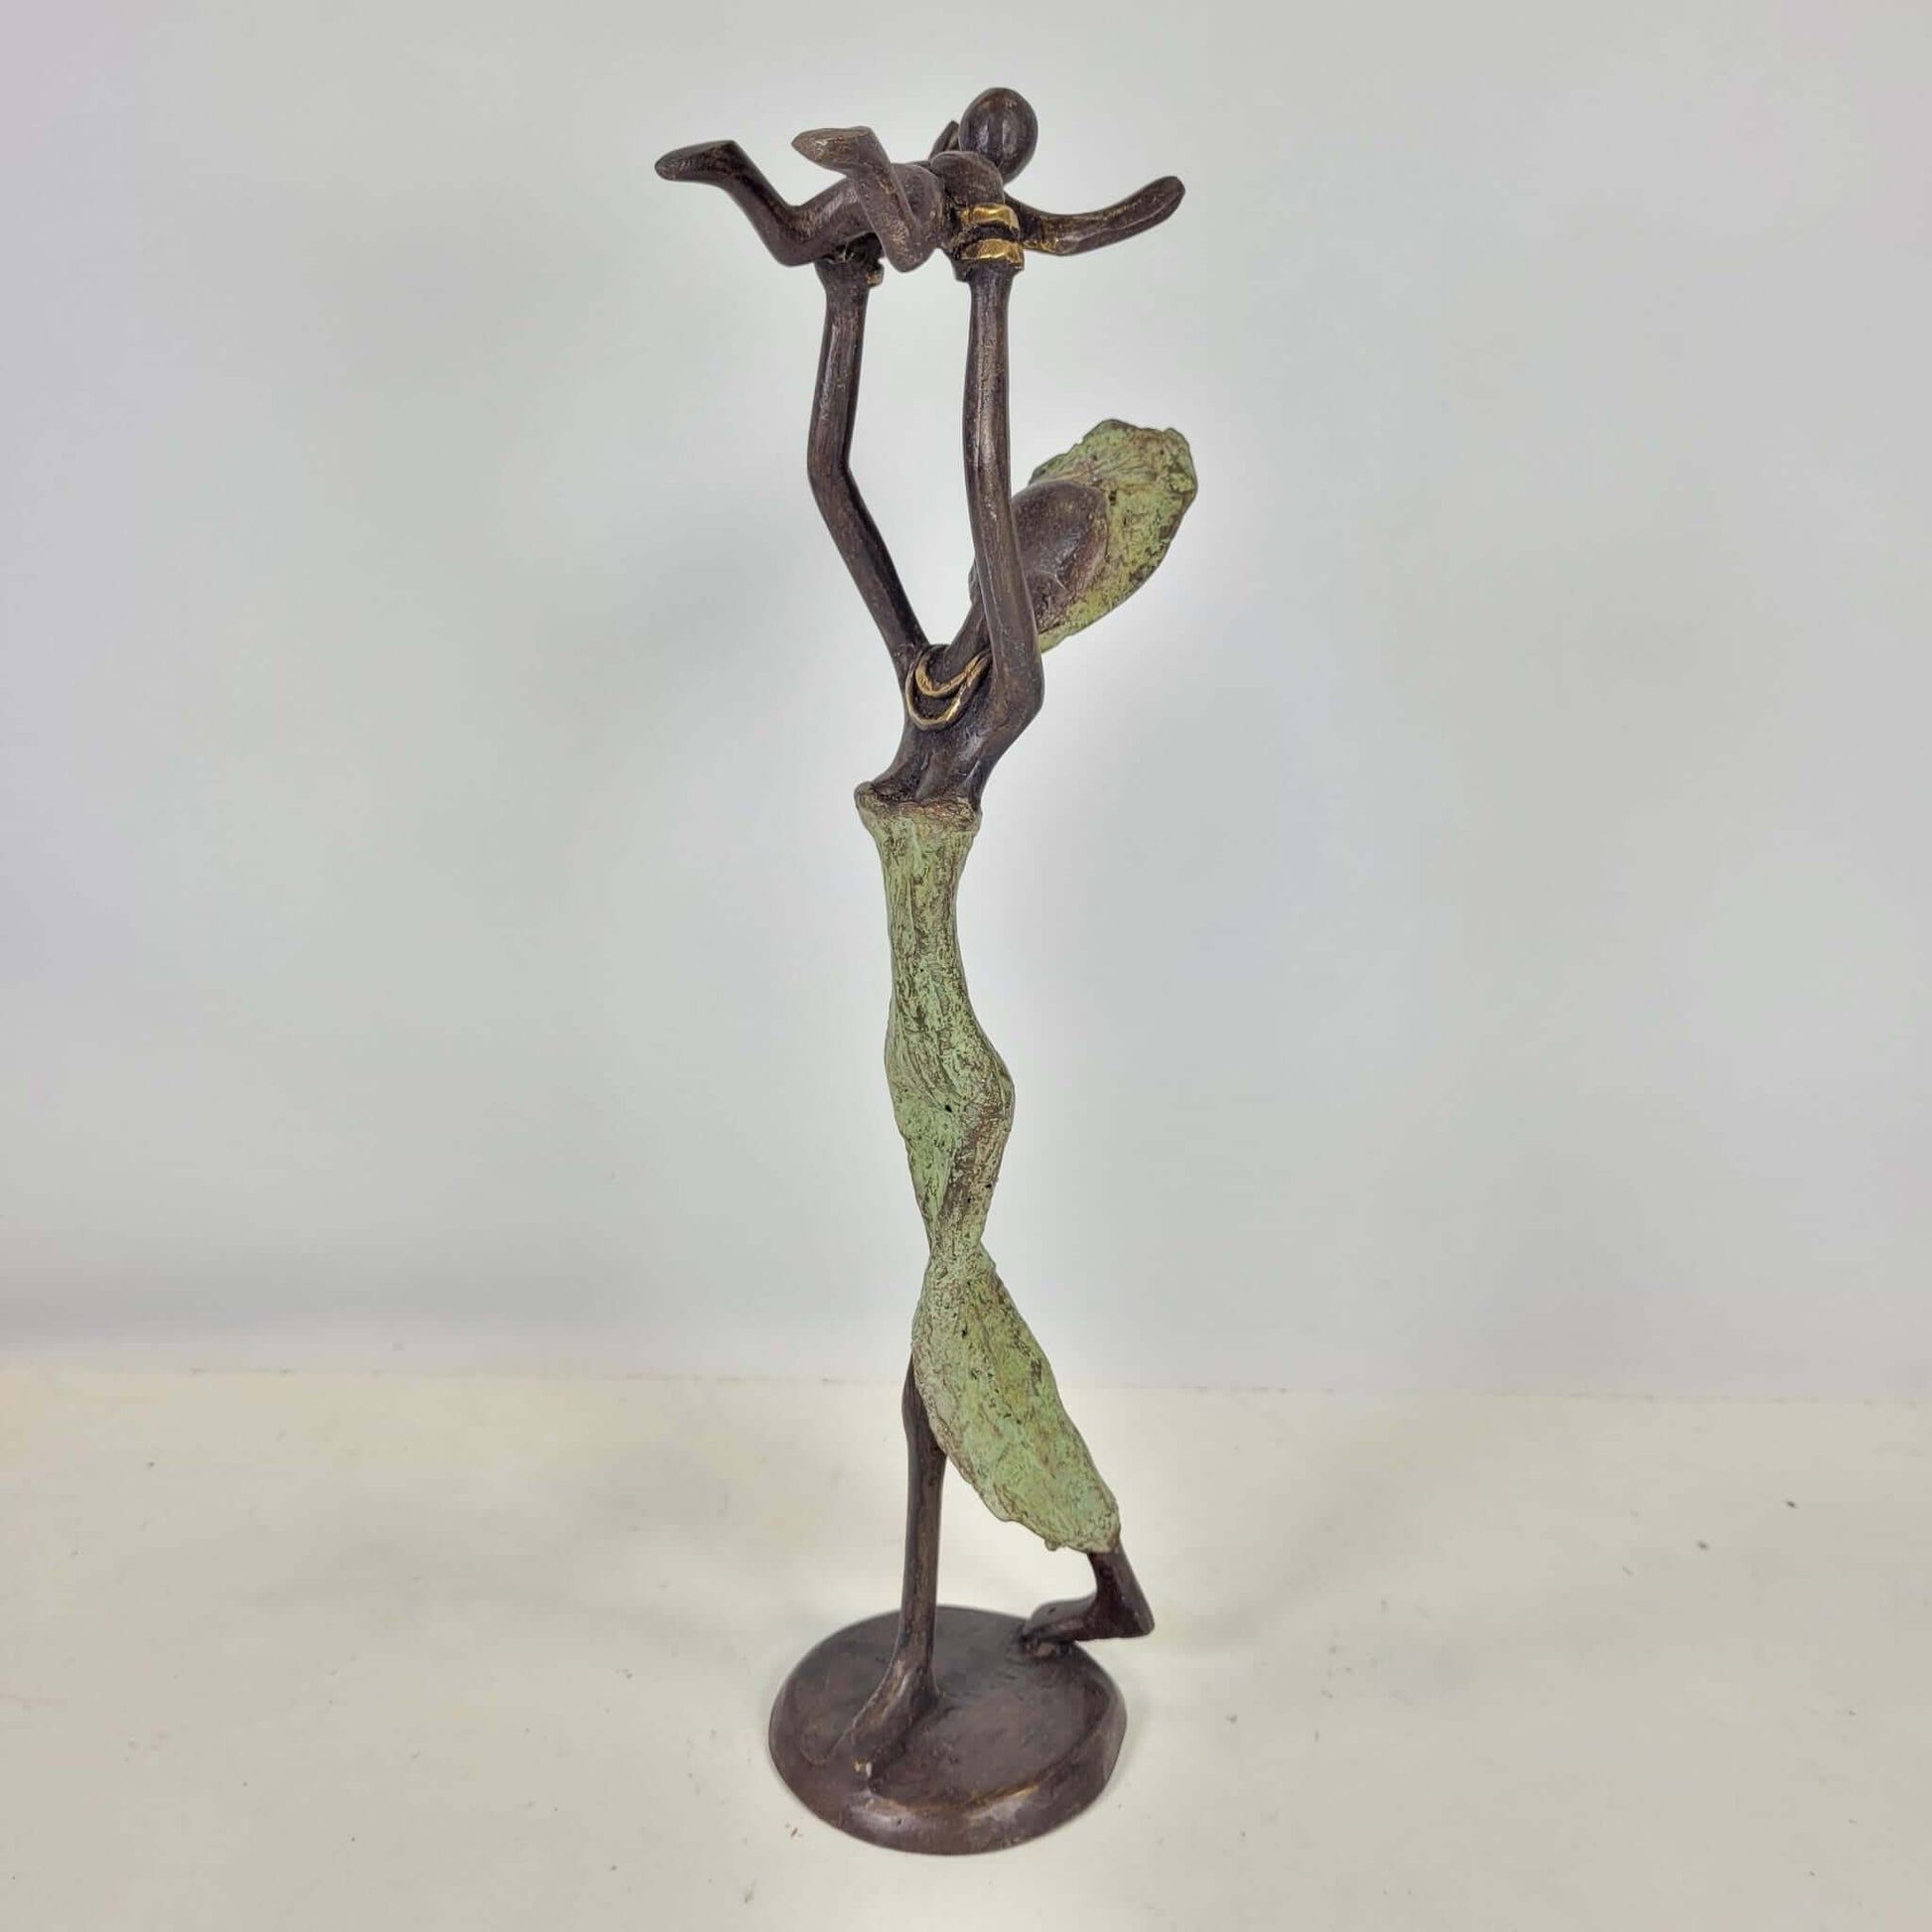 Bronze-Skulptur "Baby in the air" by Soré | verschiedene Größen und Farben